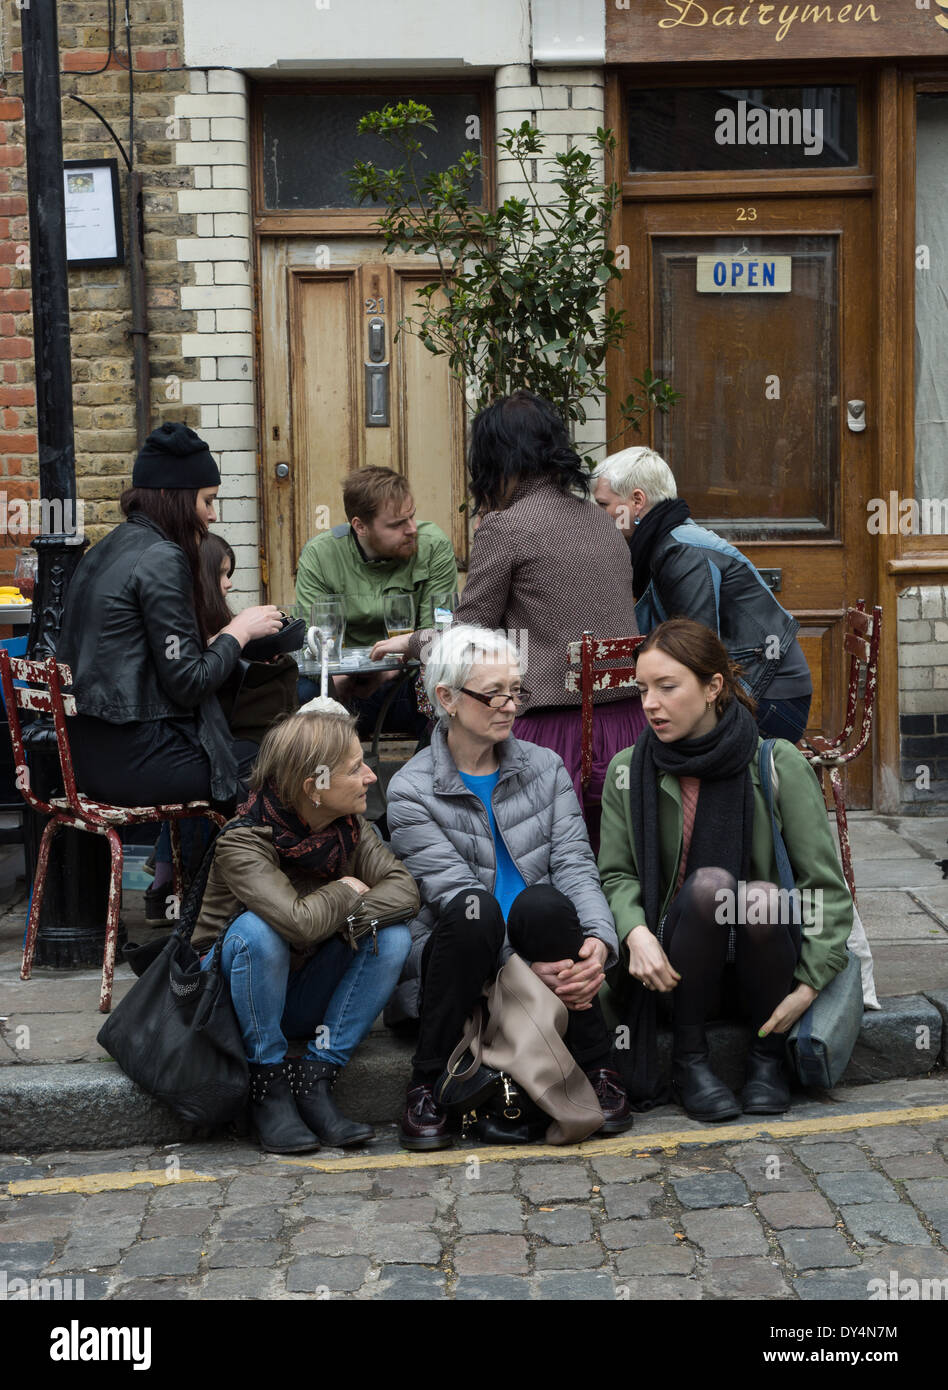 Les gens assis dehors, pub, Columbia Road. Londres Banque D'Images